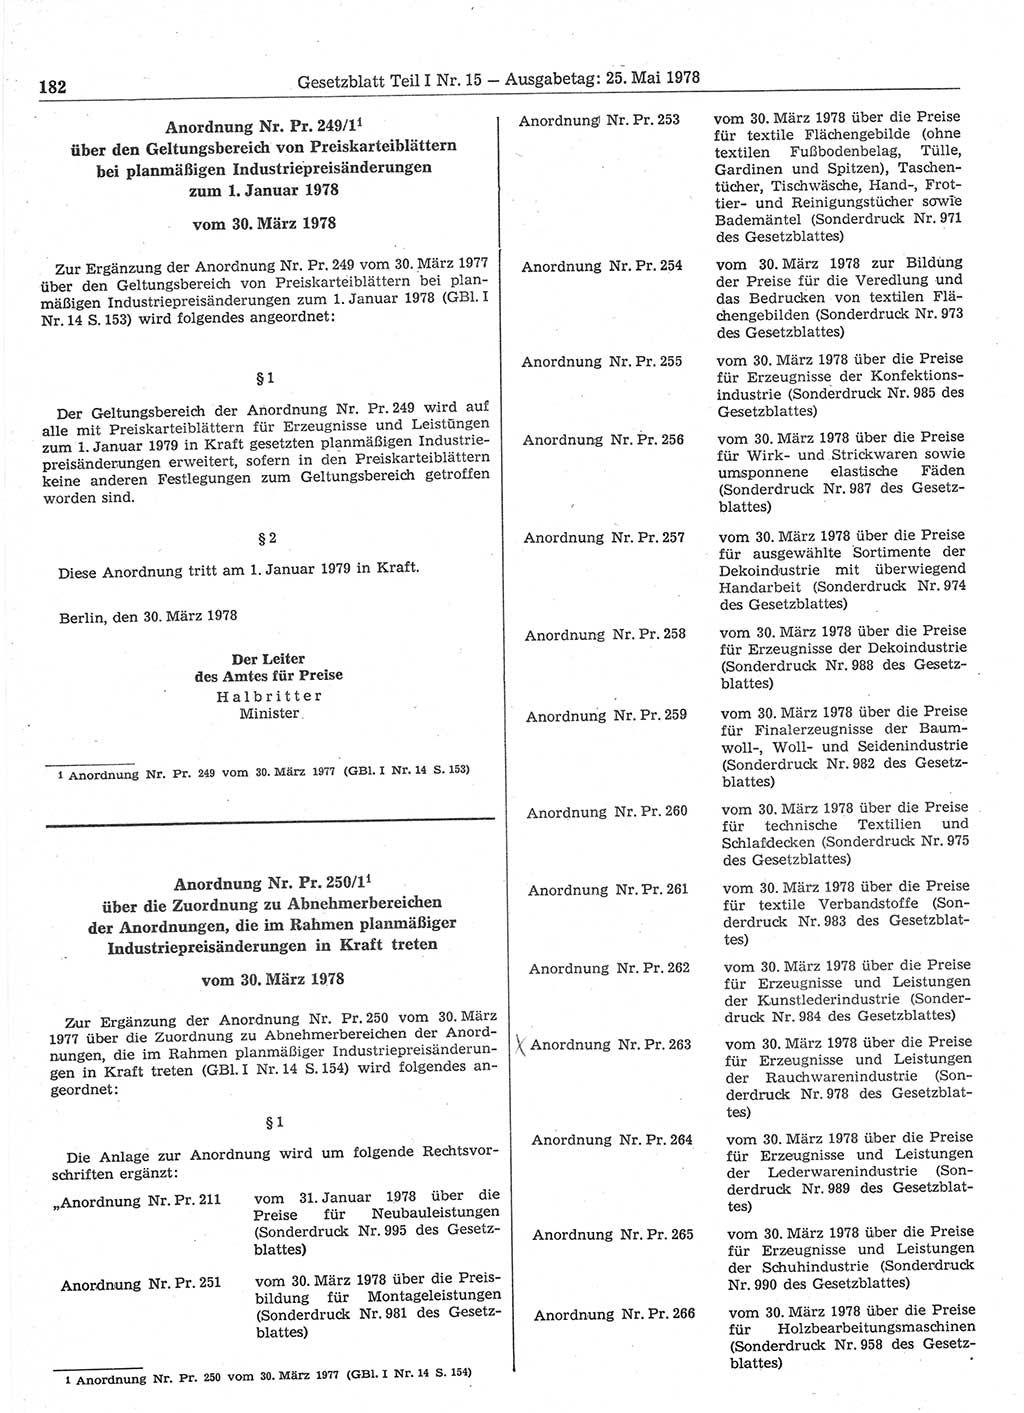 Gesetzblatt (GBl.) der Deutschen Demokratischen Republik (DDR) Teil Ⅰ 1978, Seite 182 (GBl. DDR Ⅰ 1978, S. 182)